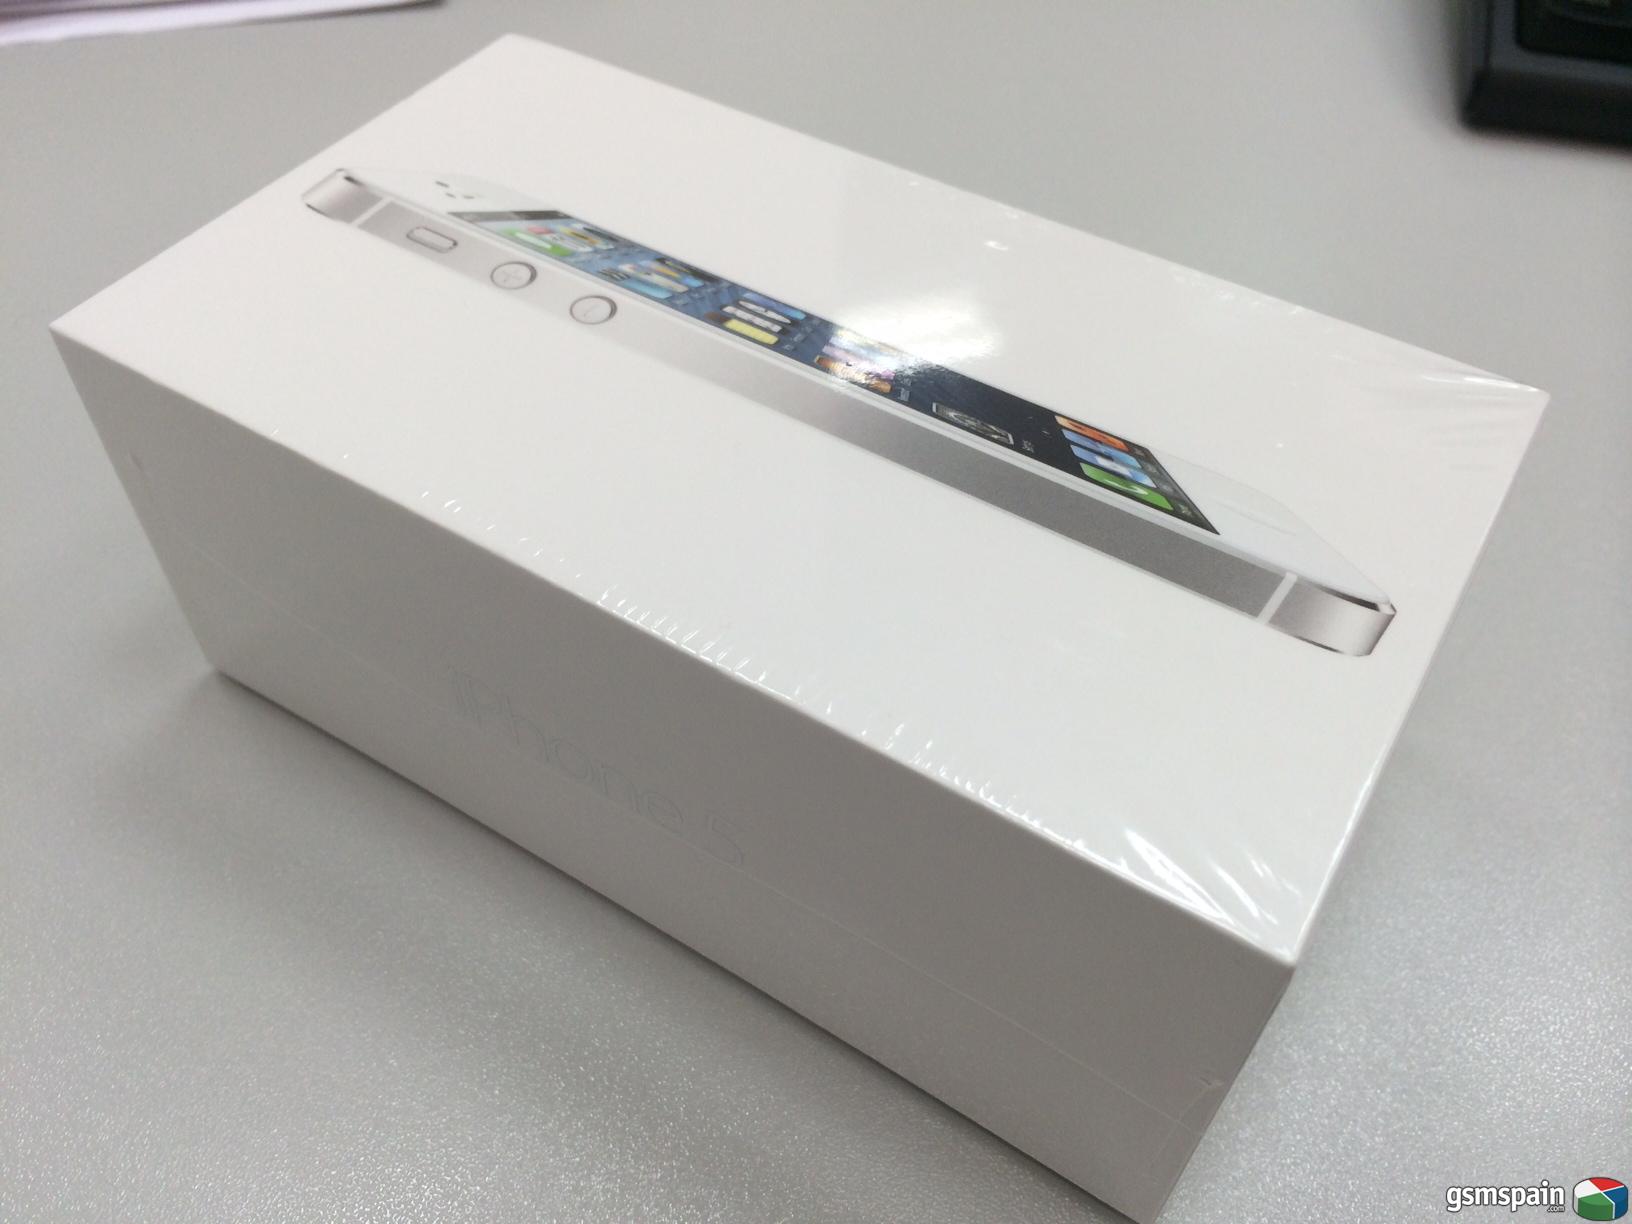 [VENDO] iPhone5 64gb, color blanco, libre de fabrica, PRECINTADO 